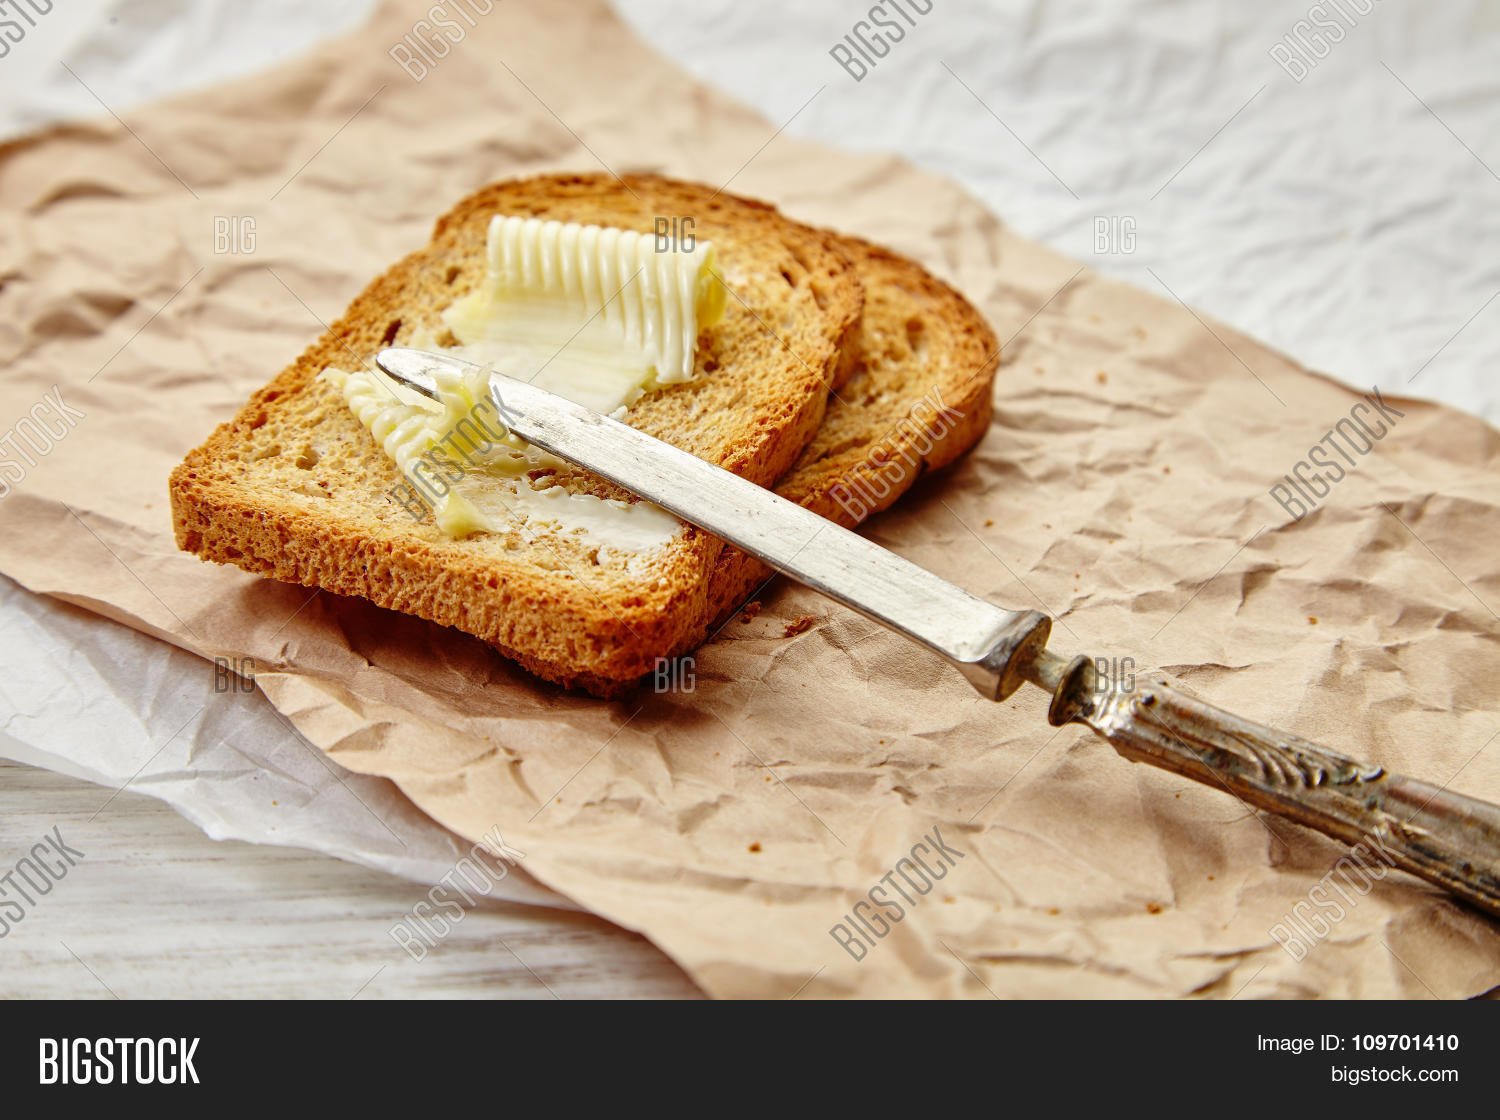 Можно ли есть масло с хлебом. Бутерброд с маслом. Хлеб с маслом. Сливочное масло на хлебе. Красивый бутерброд с маслом.